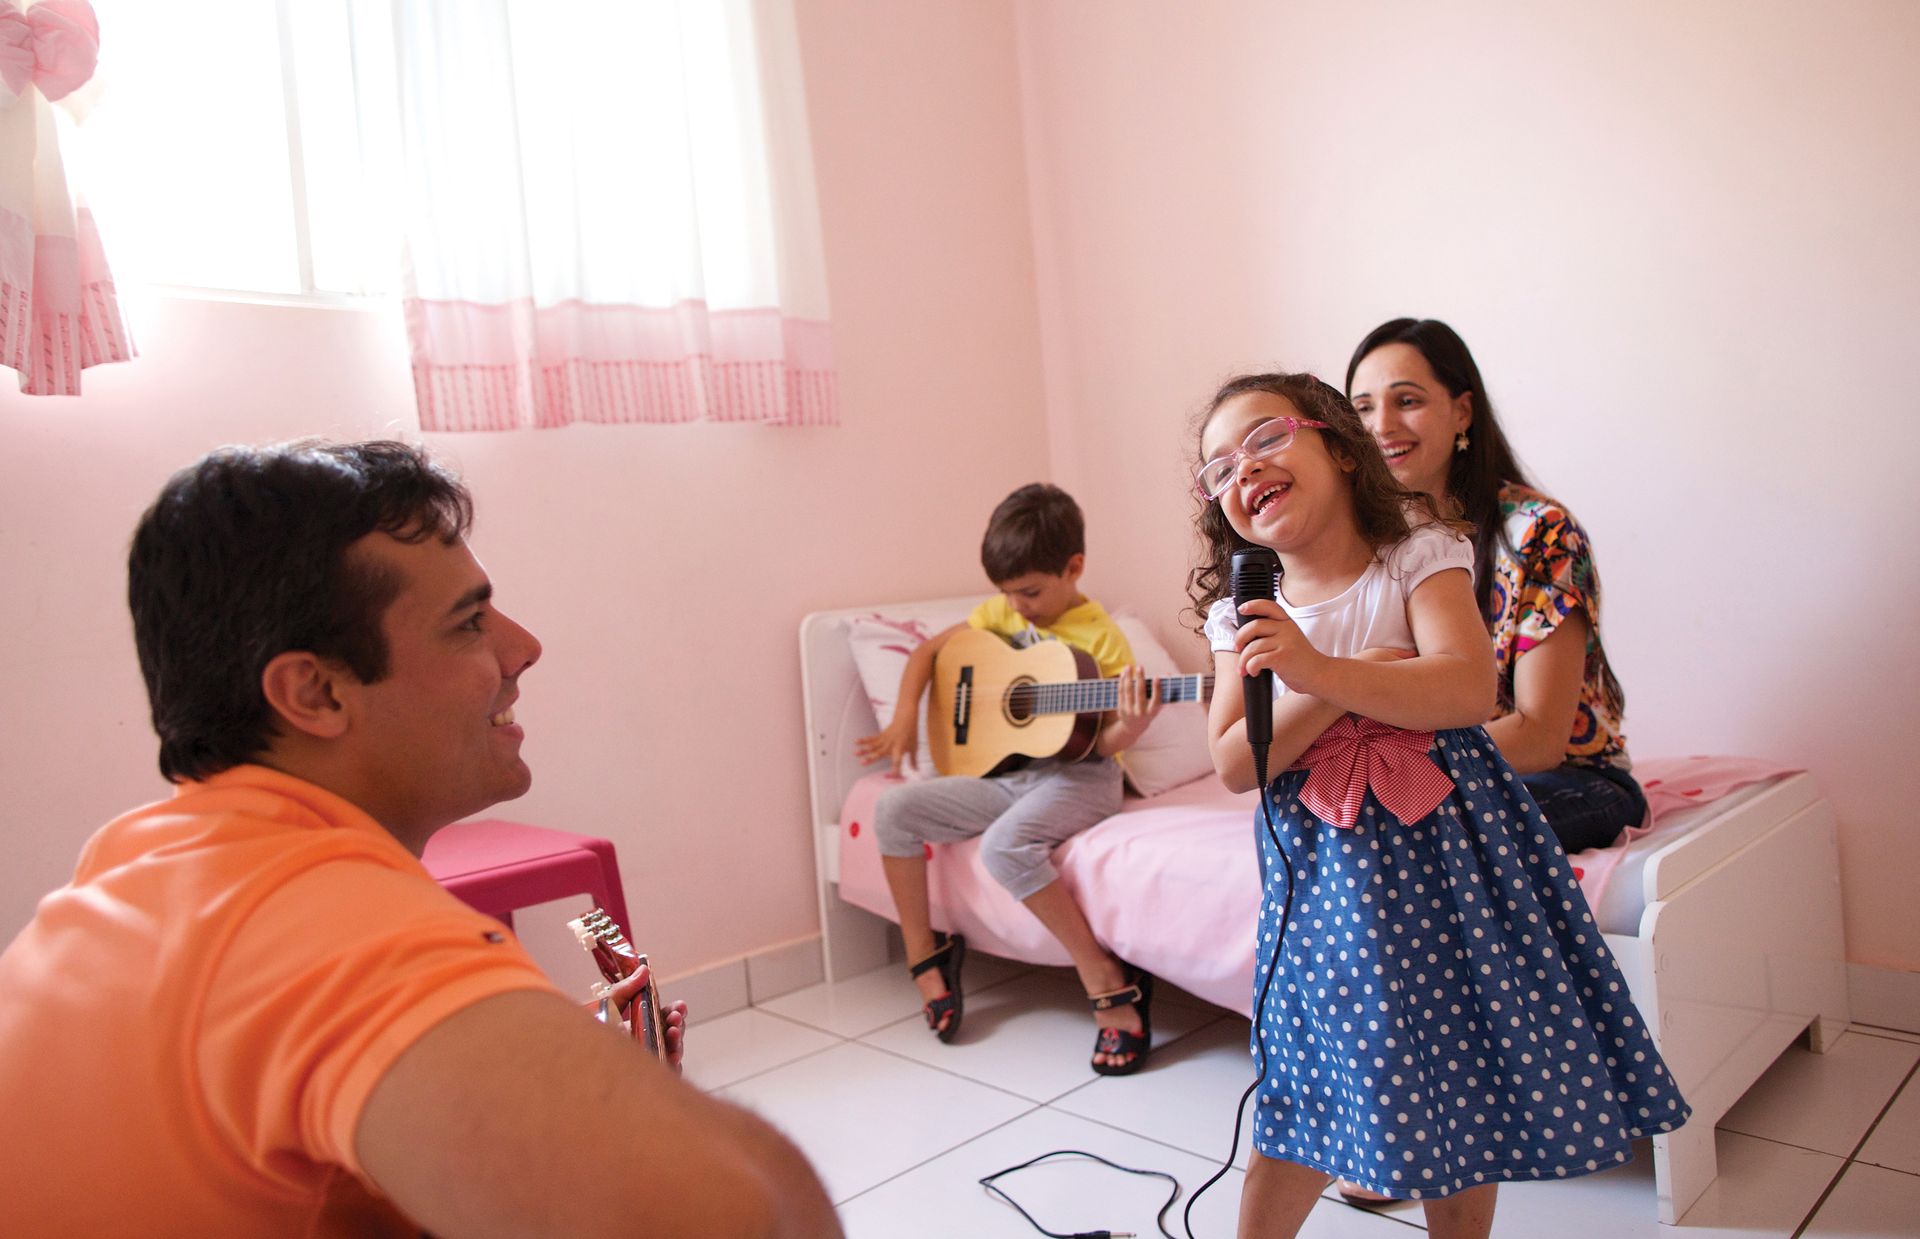 무릴로와 켈리 리베이로 부부는 자녀들과 함께 시간을 보내는 것을 좋아한다. 딸이 노래를 하고, 무릴로와 아들이 기타로 반주를 한다.